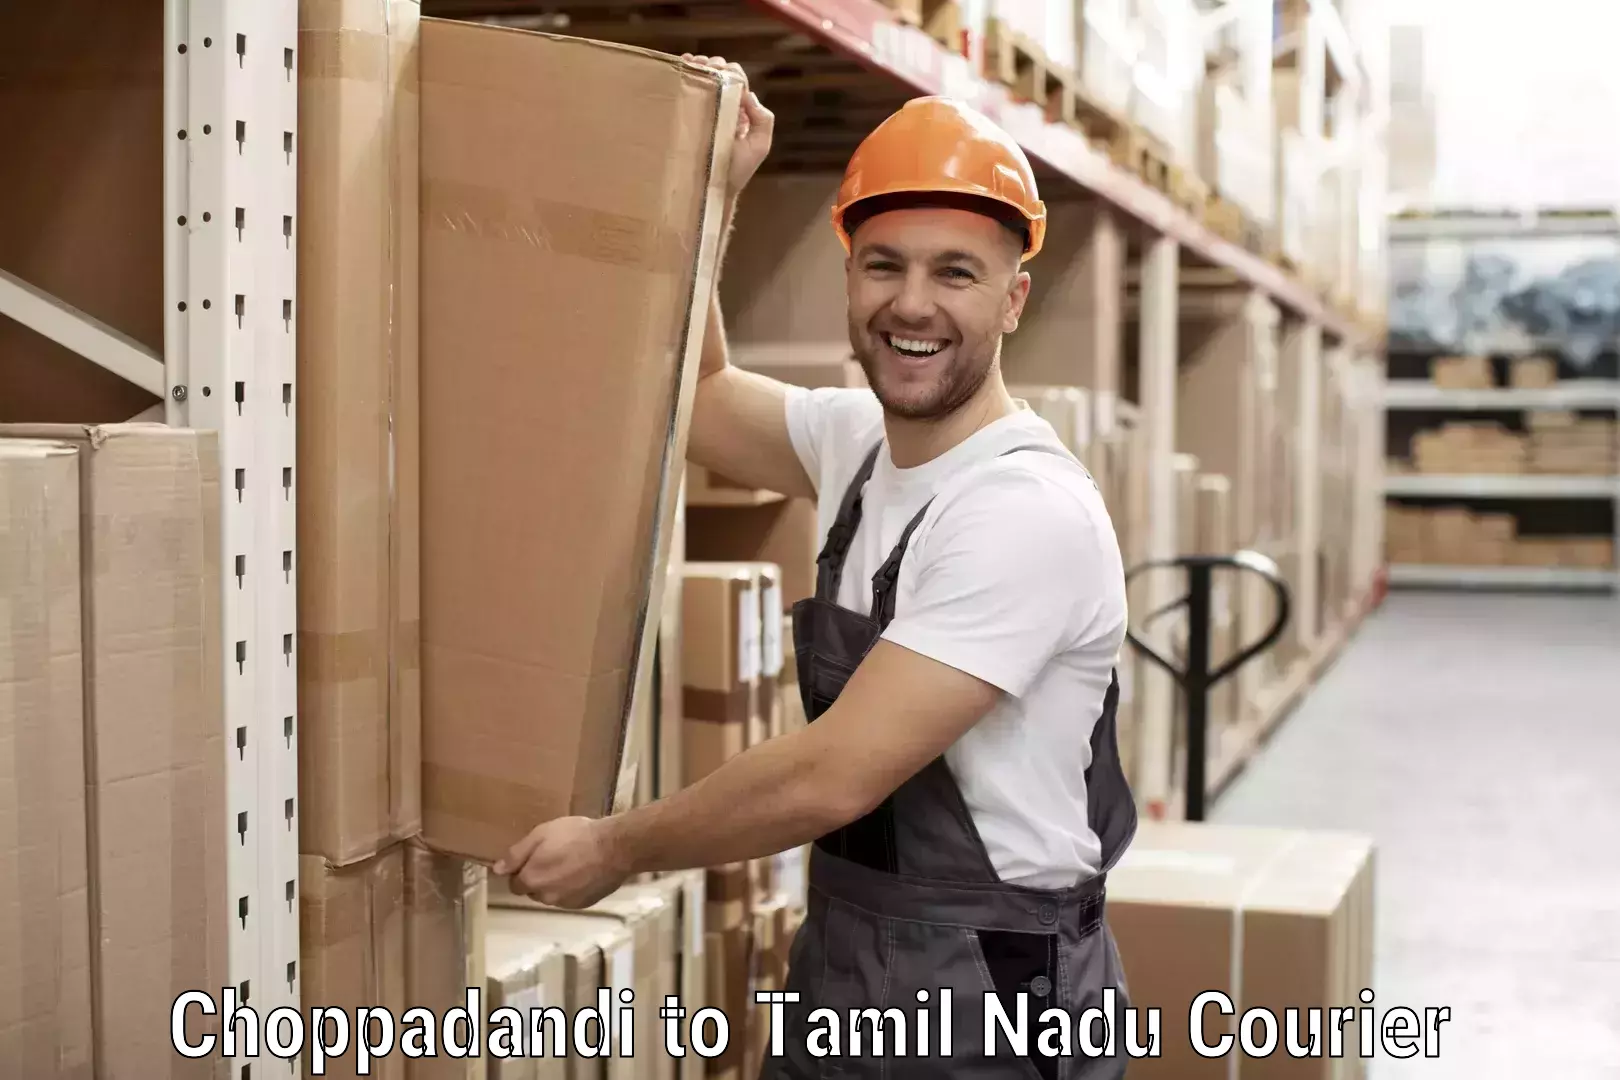 On-call courier service Choppadandi to Tallakulam